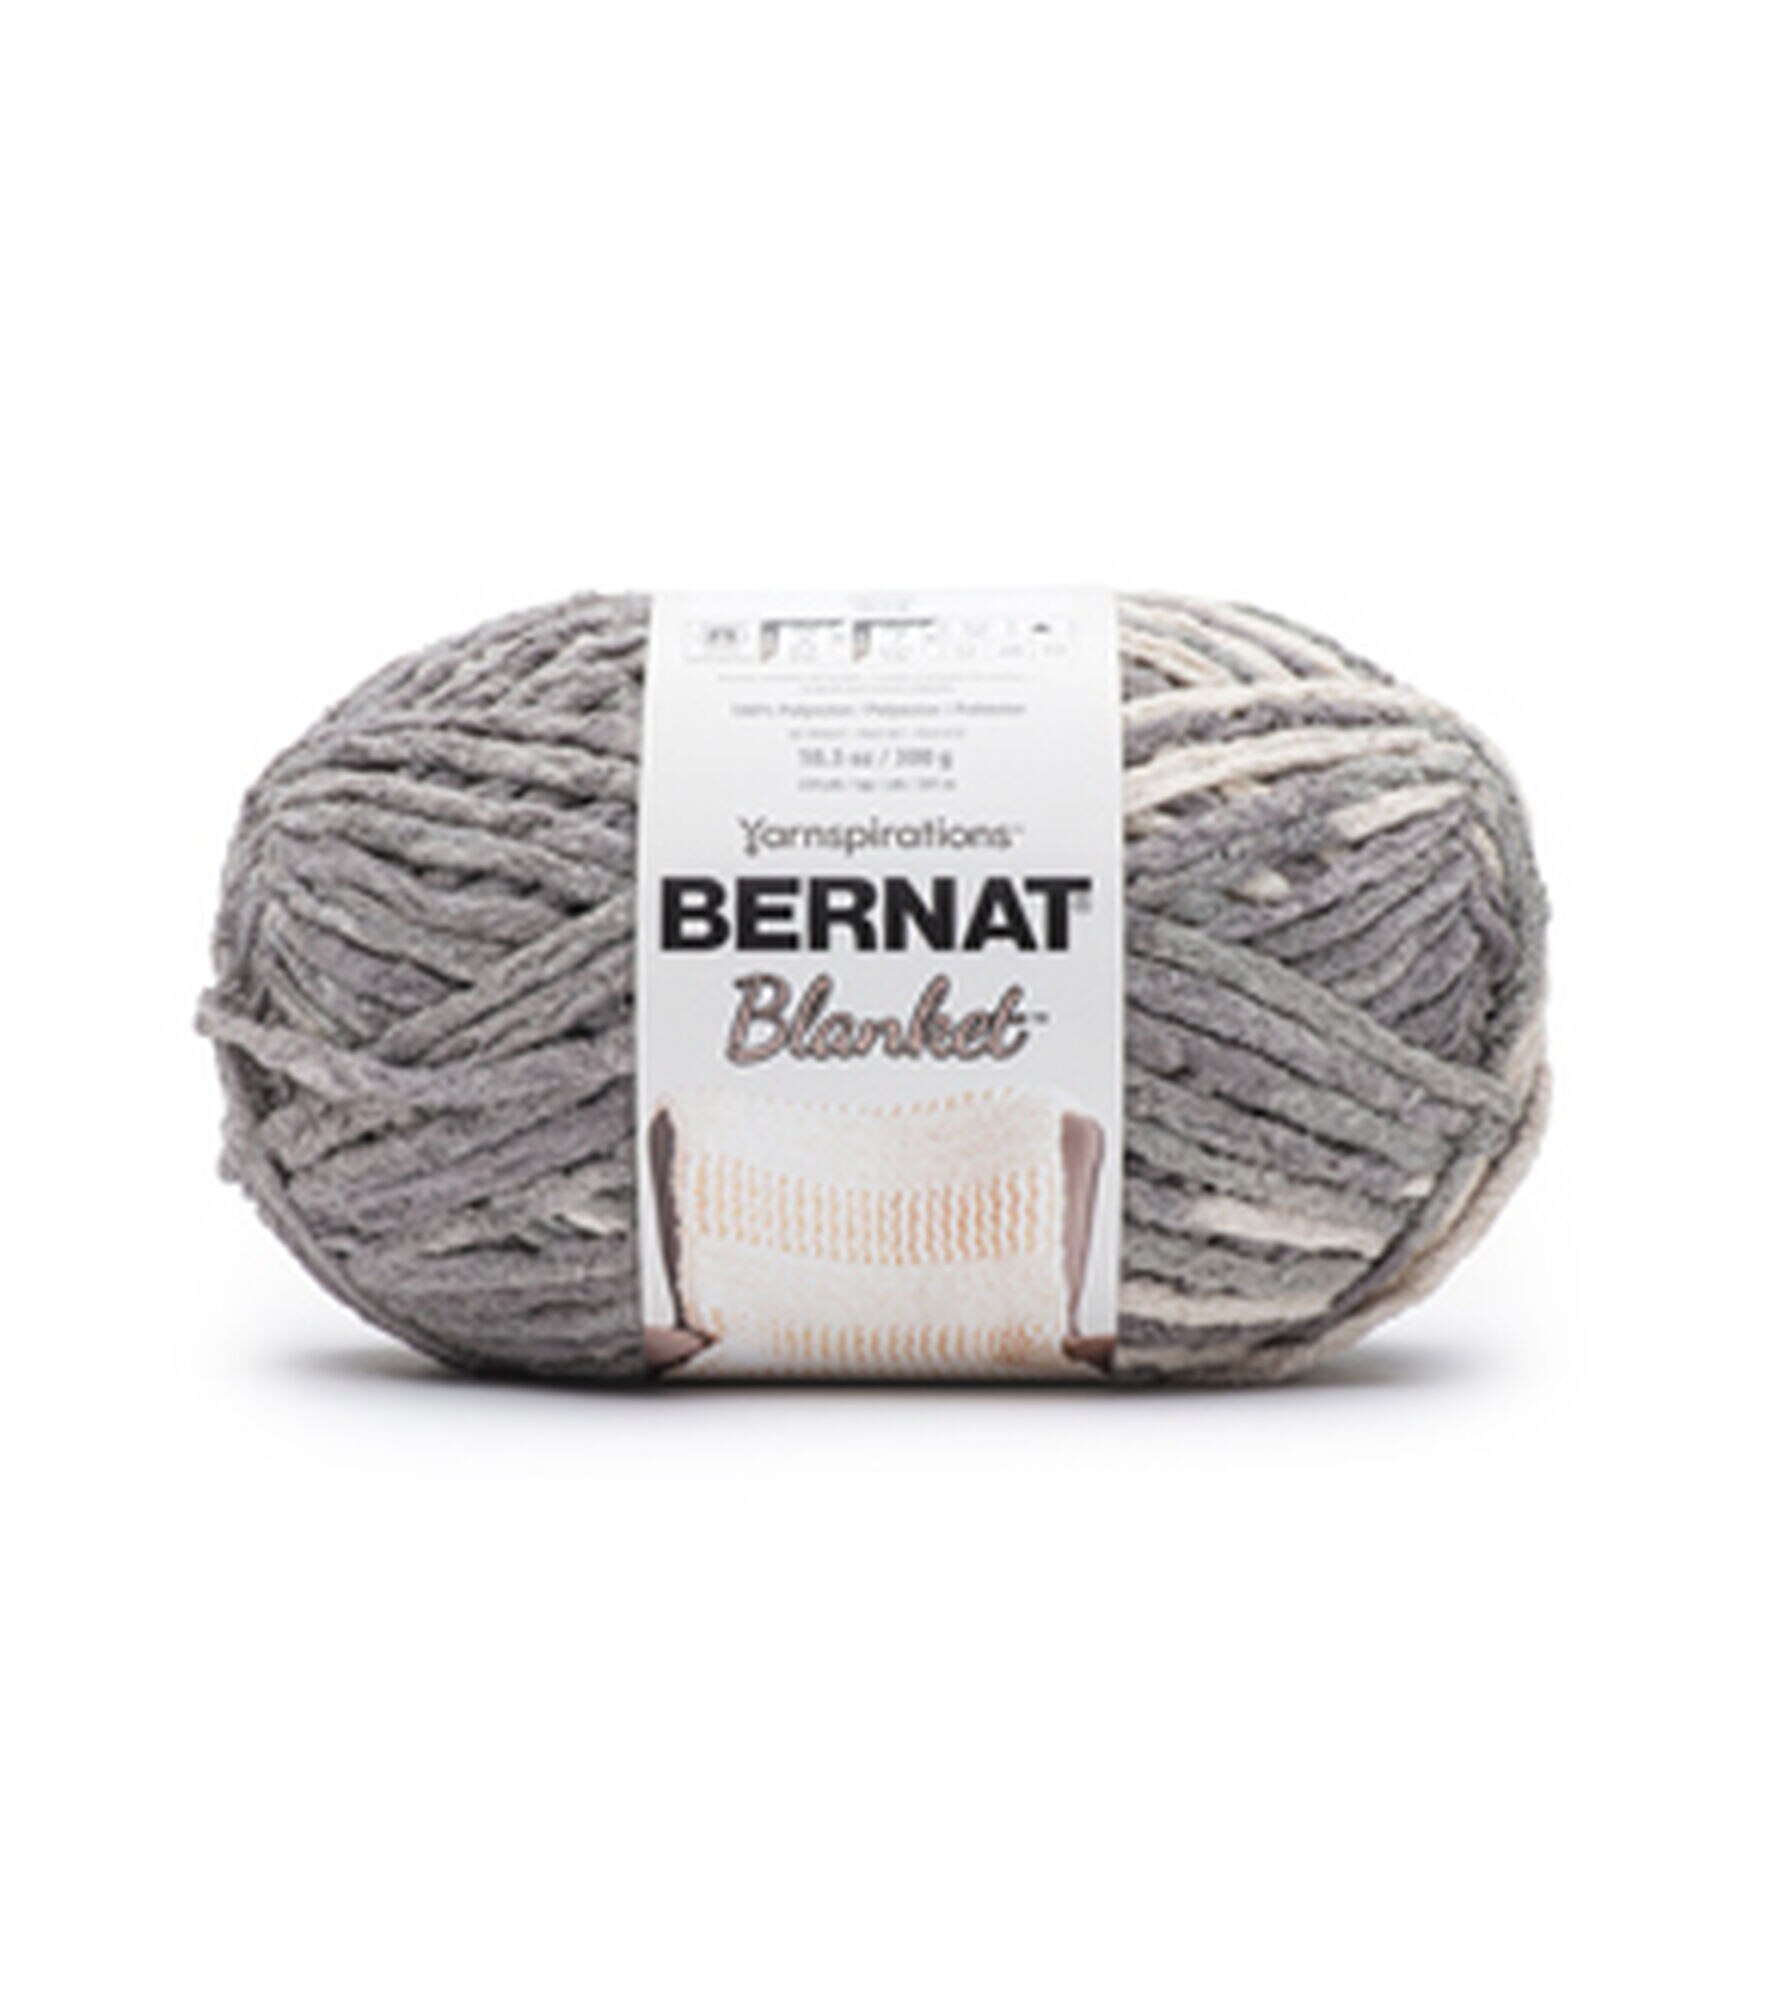 Bernat Blanket Big Ball Yarn Forest Sage